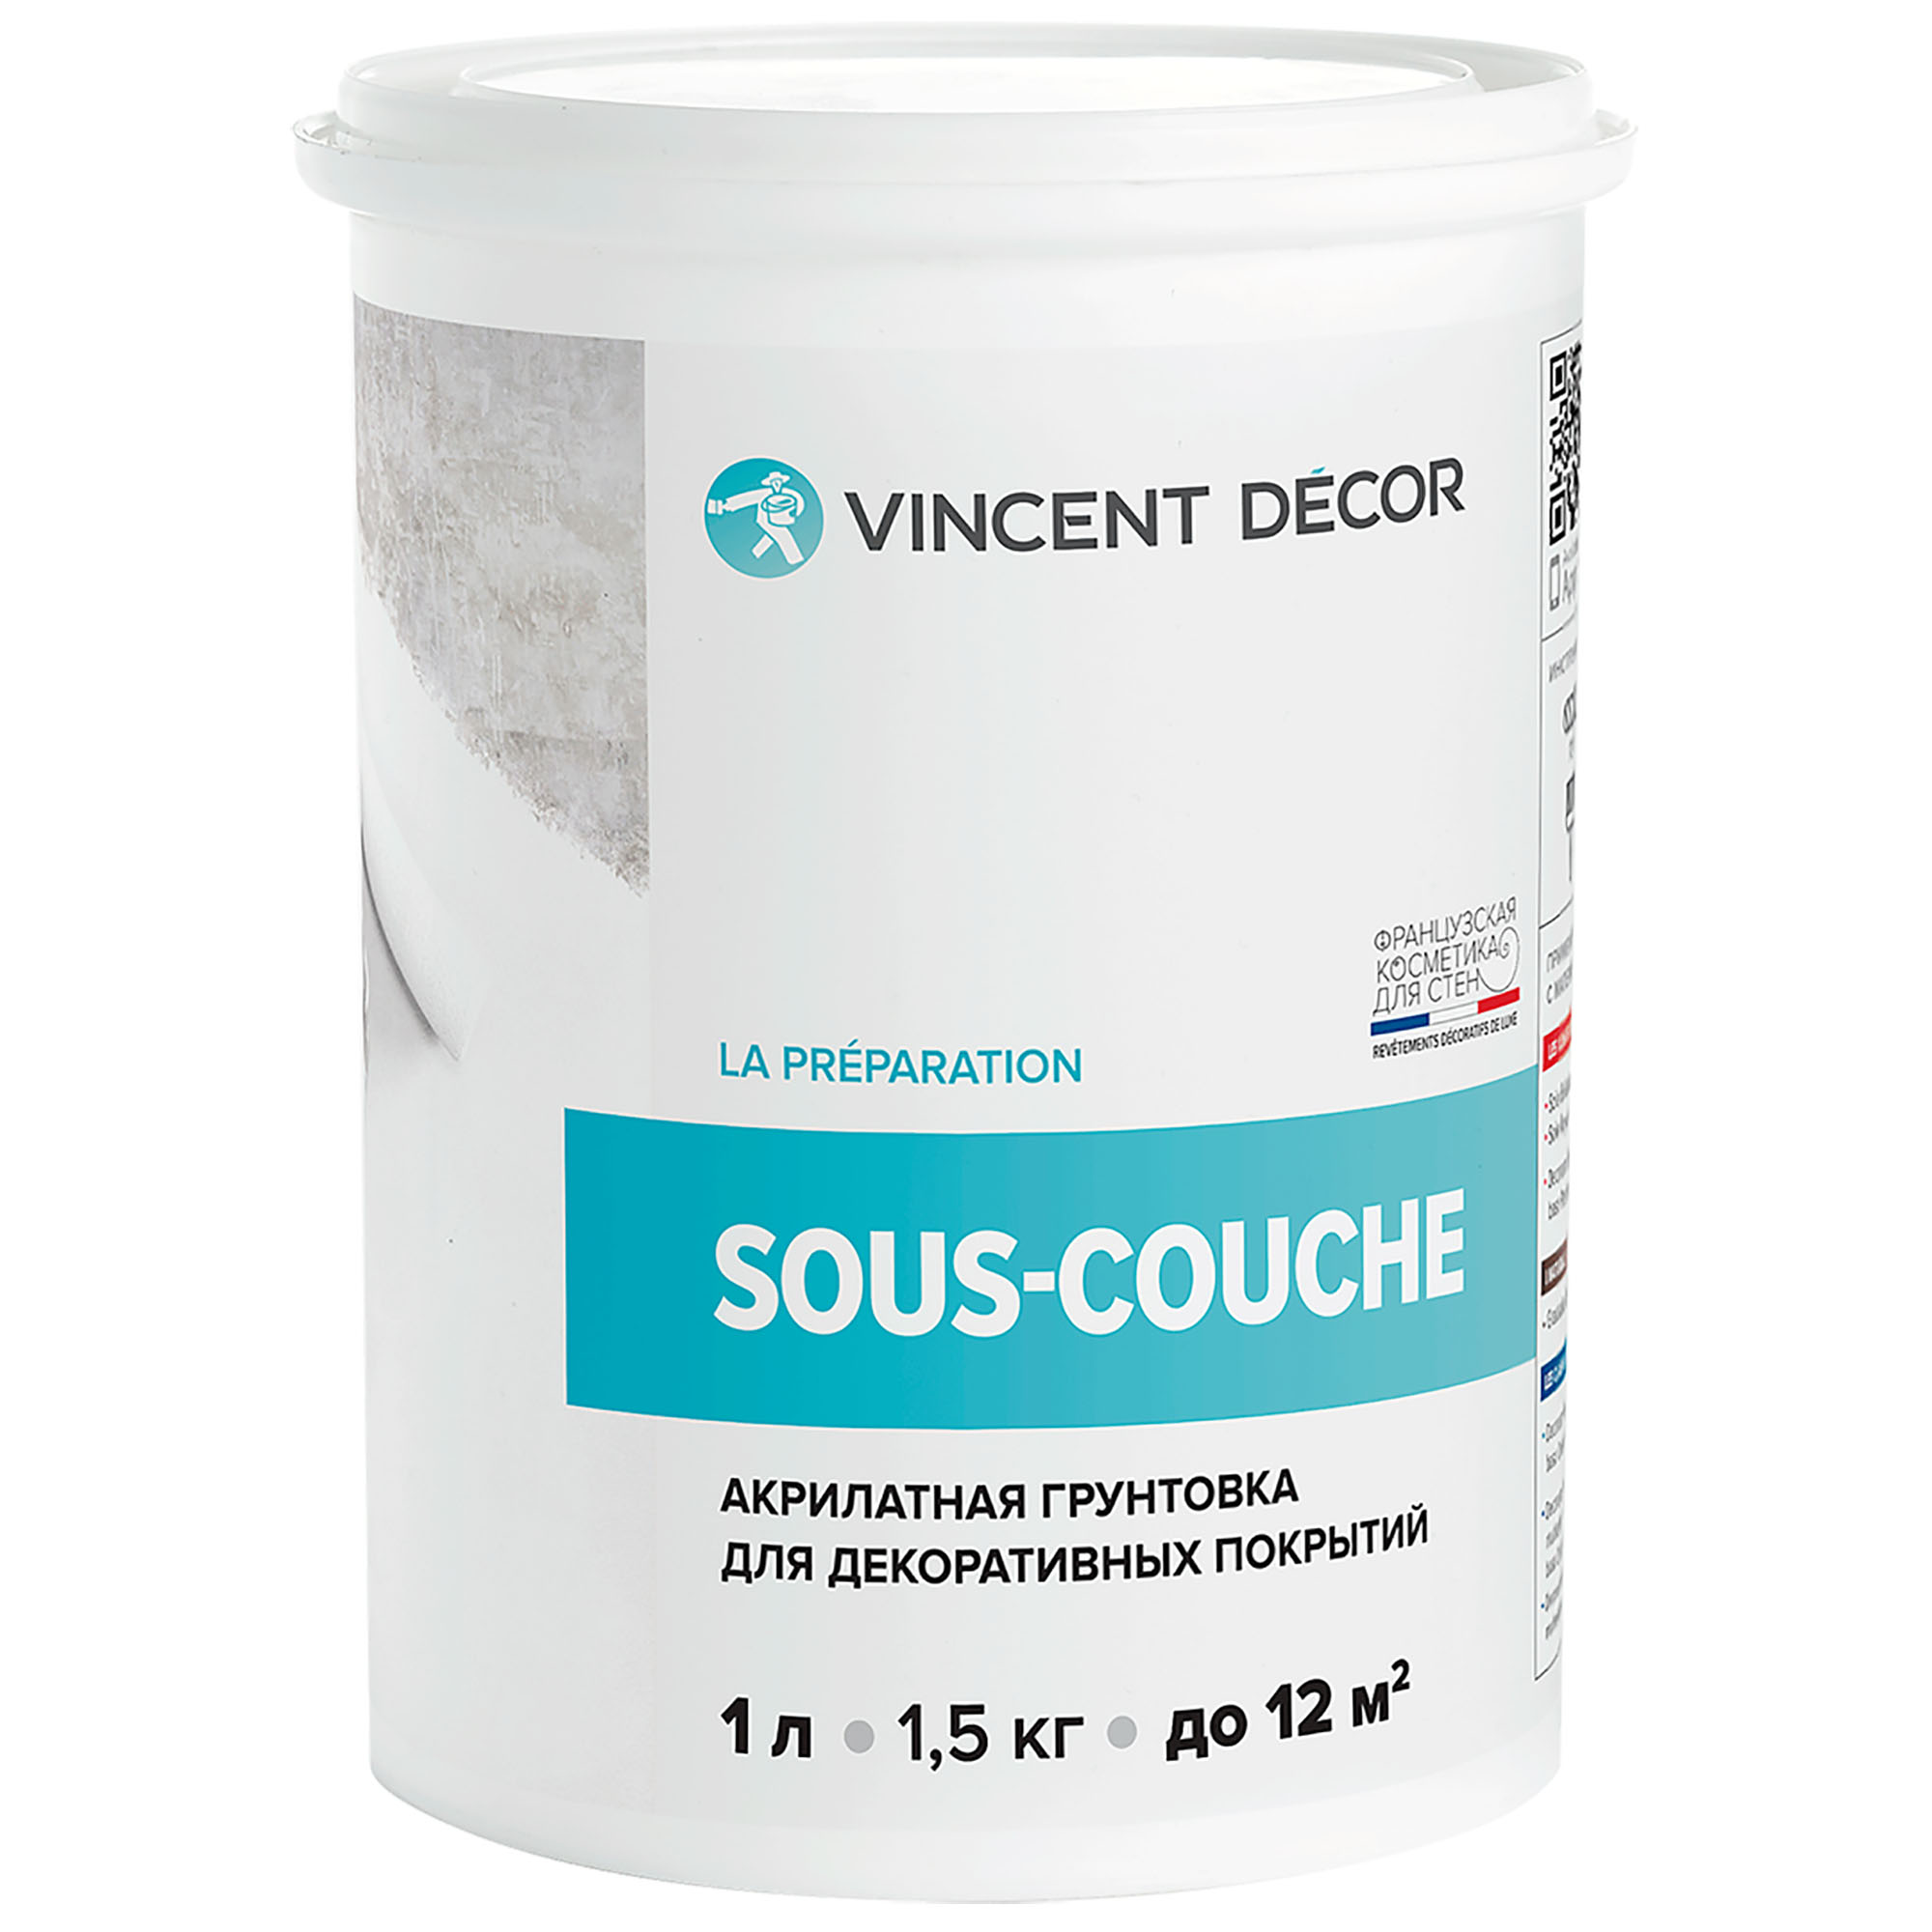 Грунтовка для декоративных покрытий Vincent Decor Sous-couche 1 л